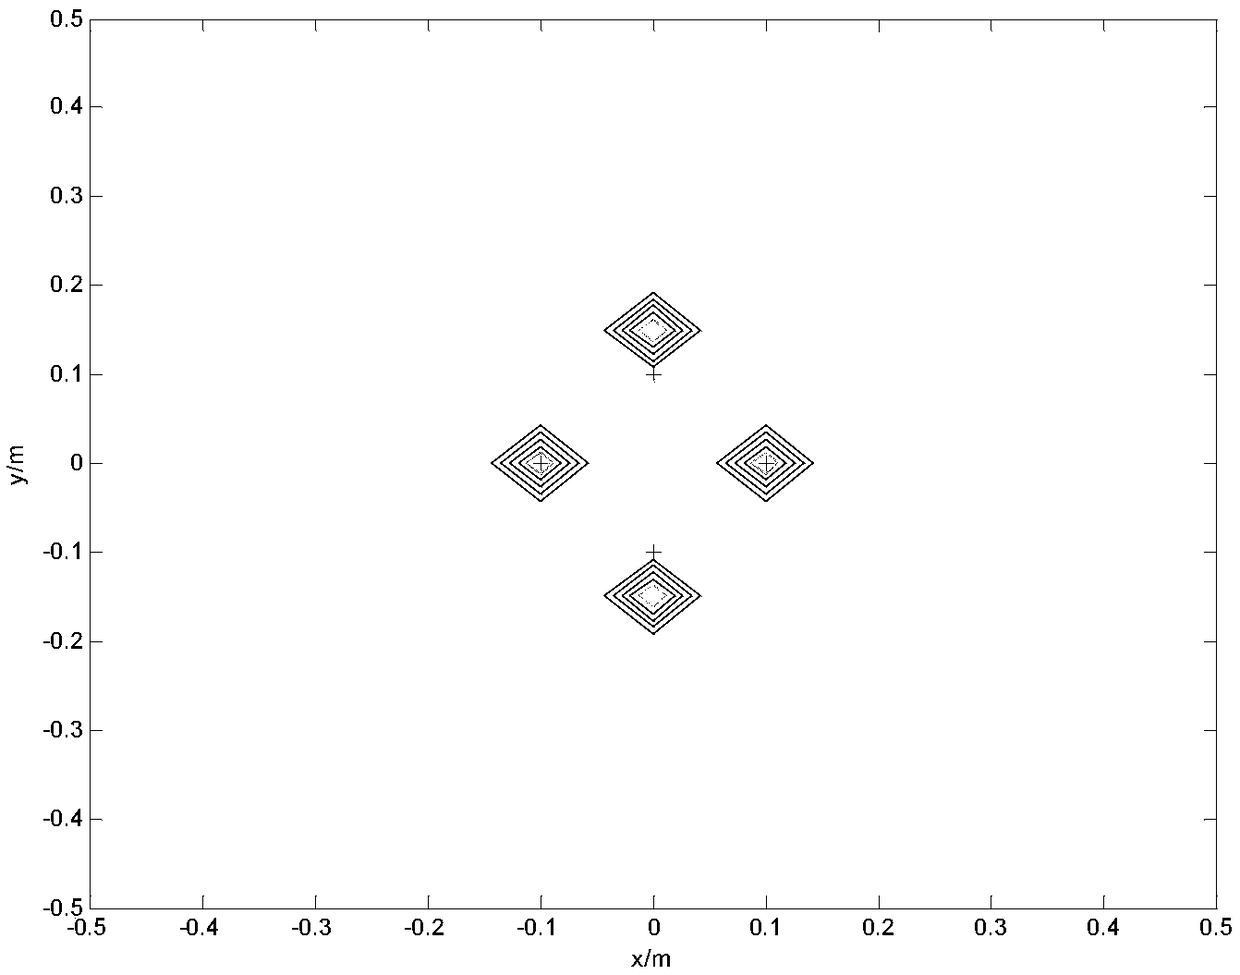 Sound source positioning method based on novel orthogonal matching pursuit algorithm